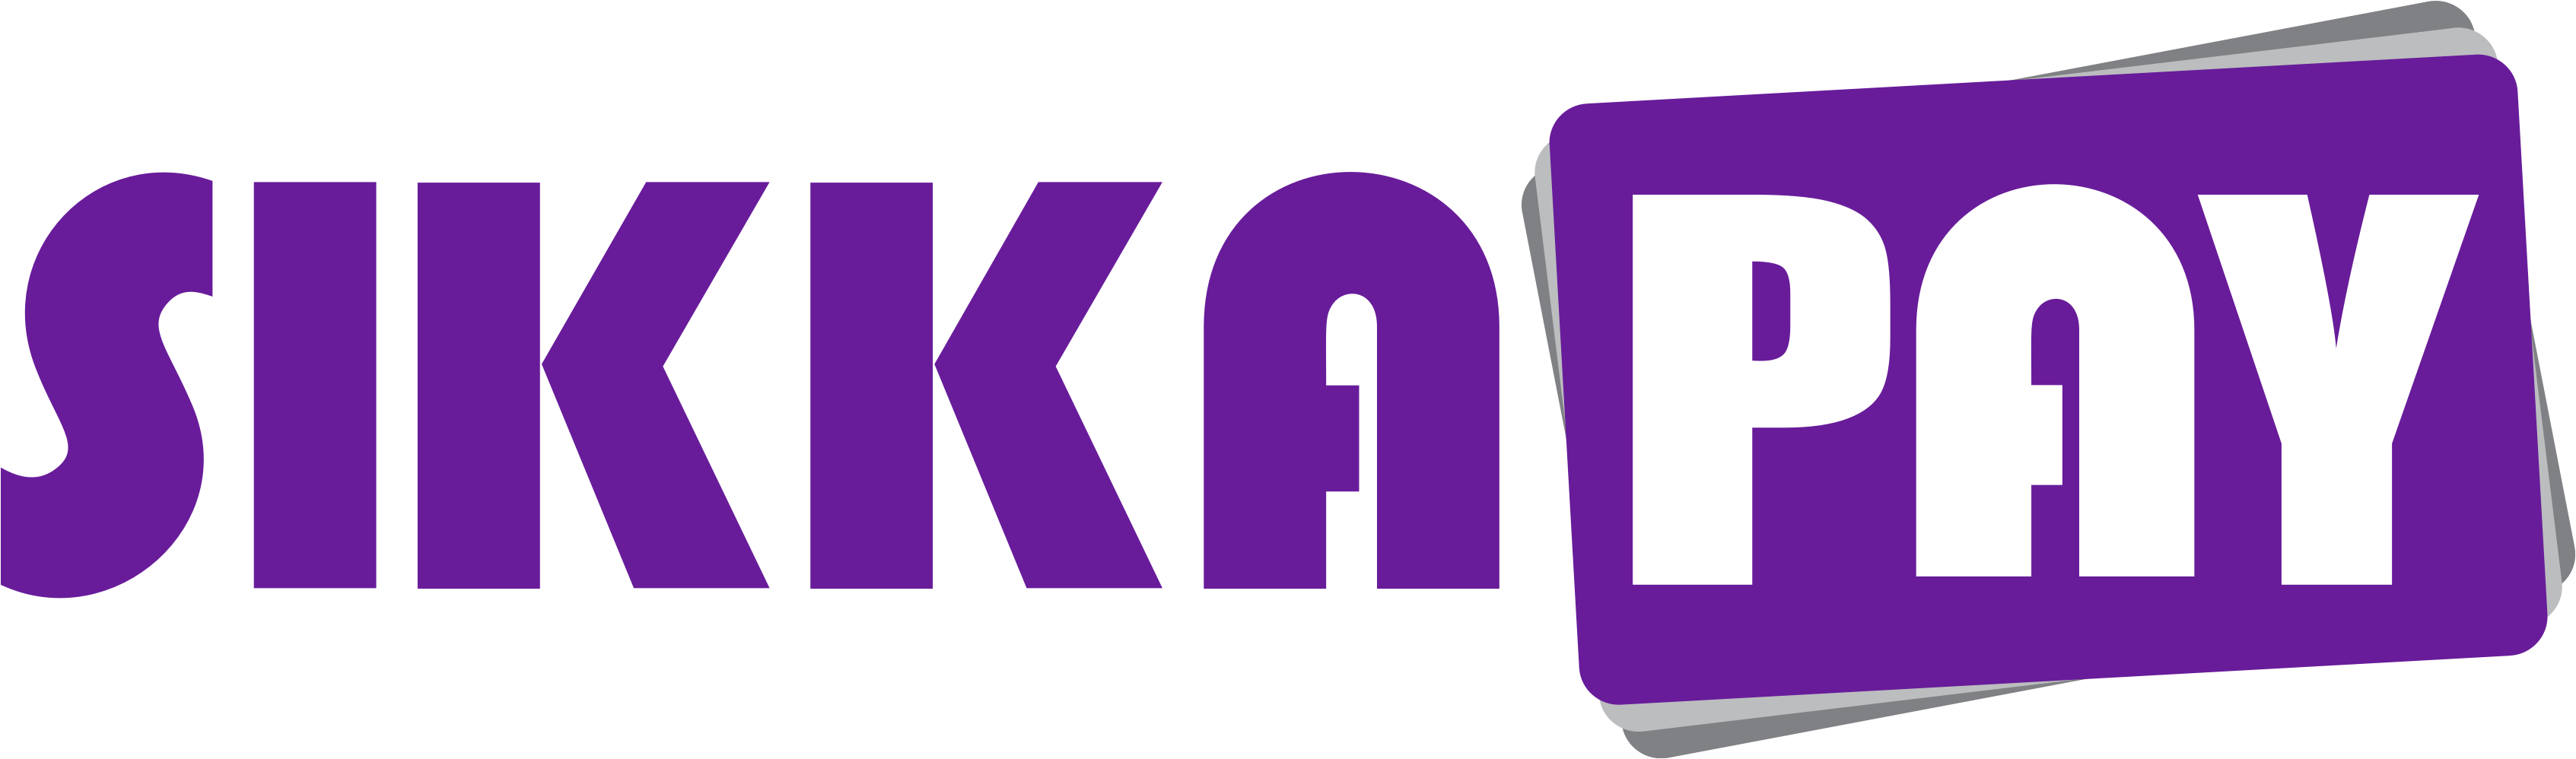 SikkaPay logo